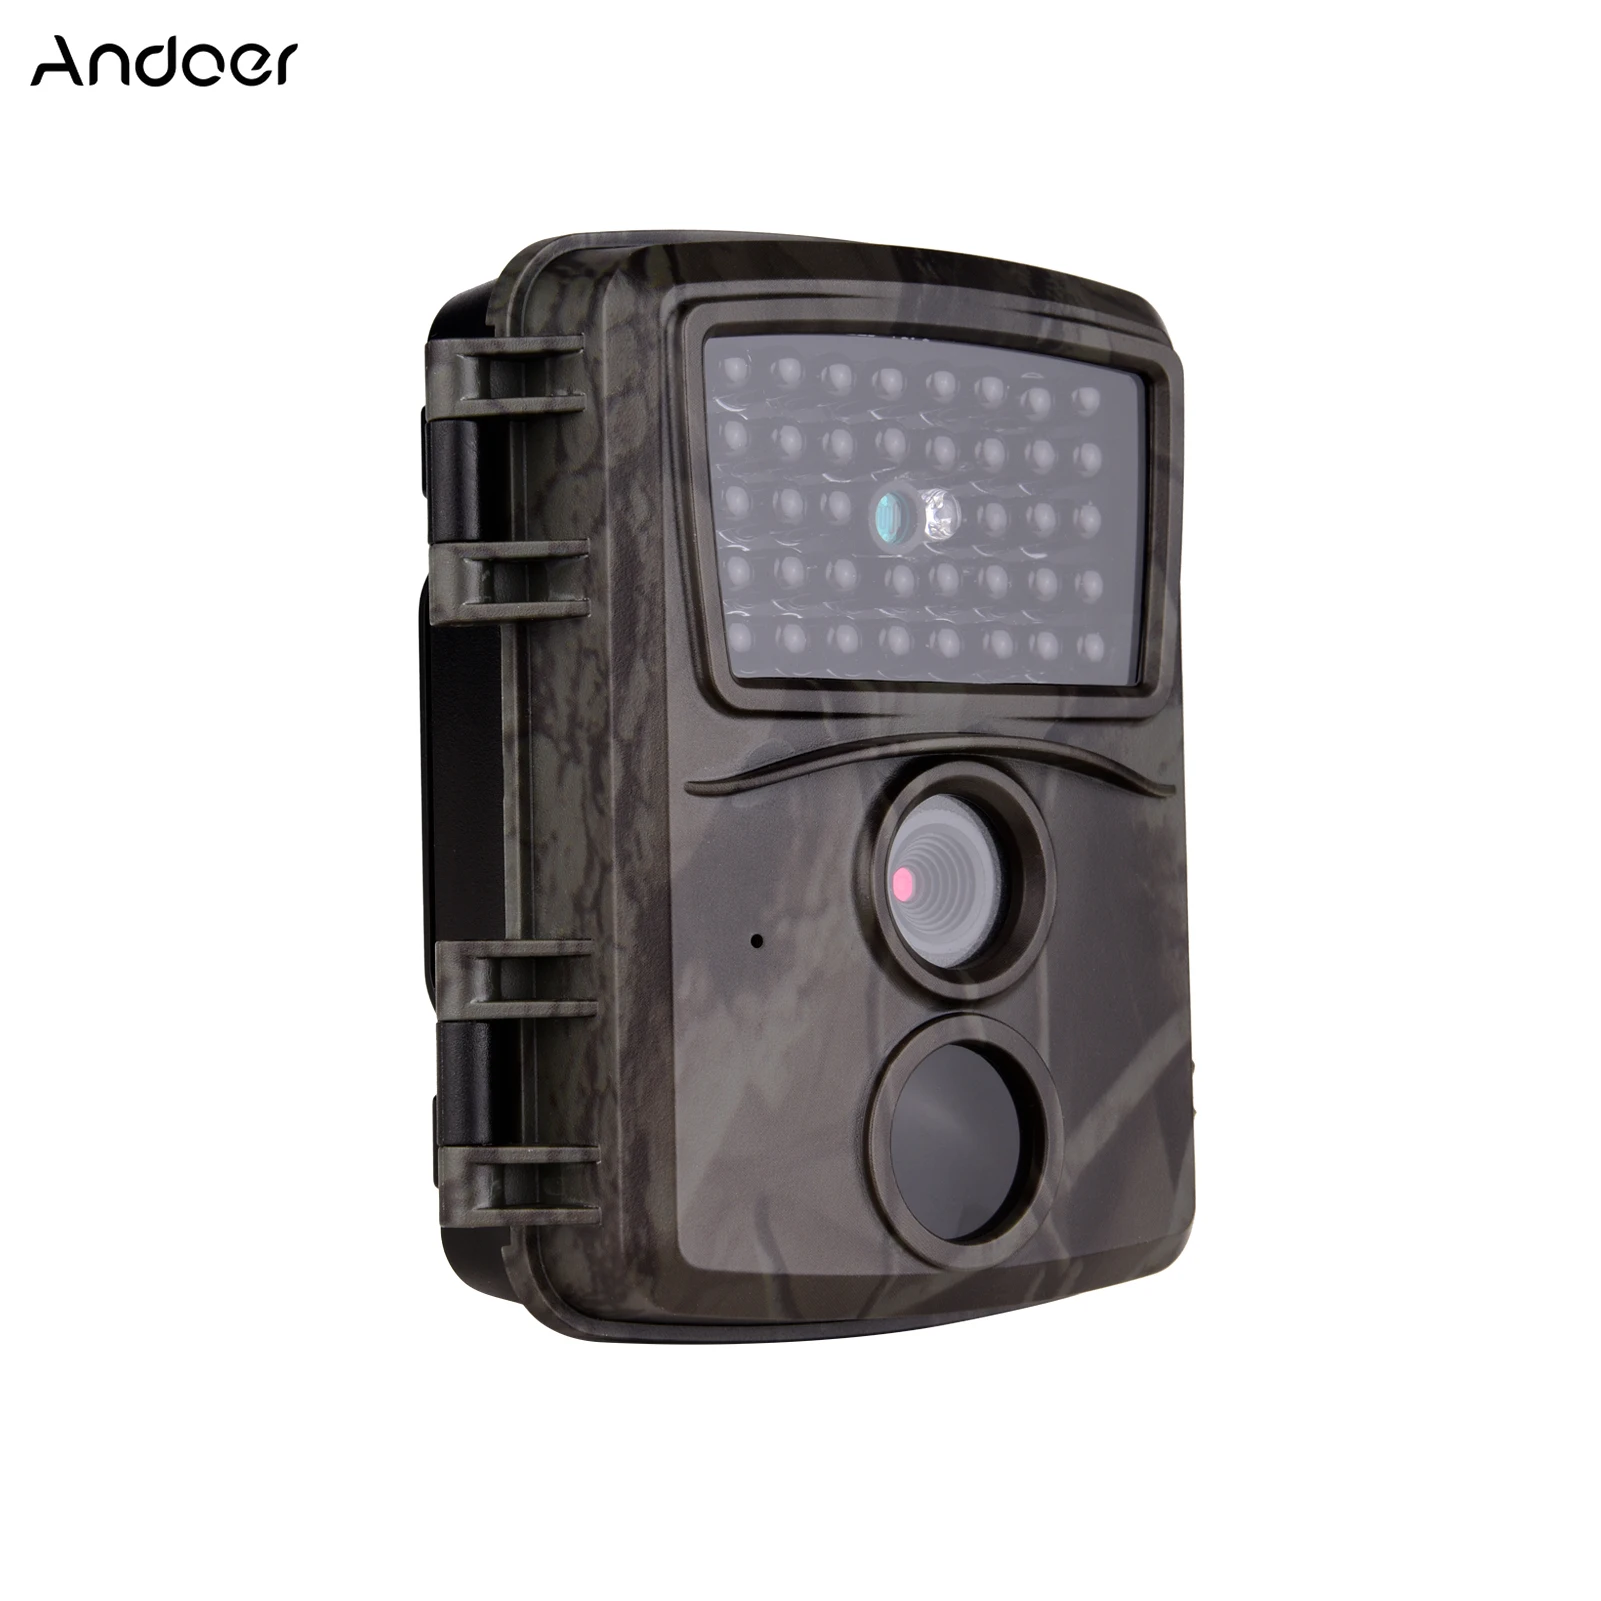 

Камера Andoer FHD1080P 0,8 s, ИК-подсветка, ночное видение, водонепроницаемость IP54, 32 ГБ, Внешняя память, интерфейс 1/4